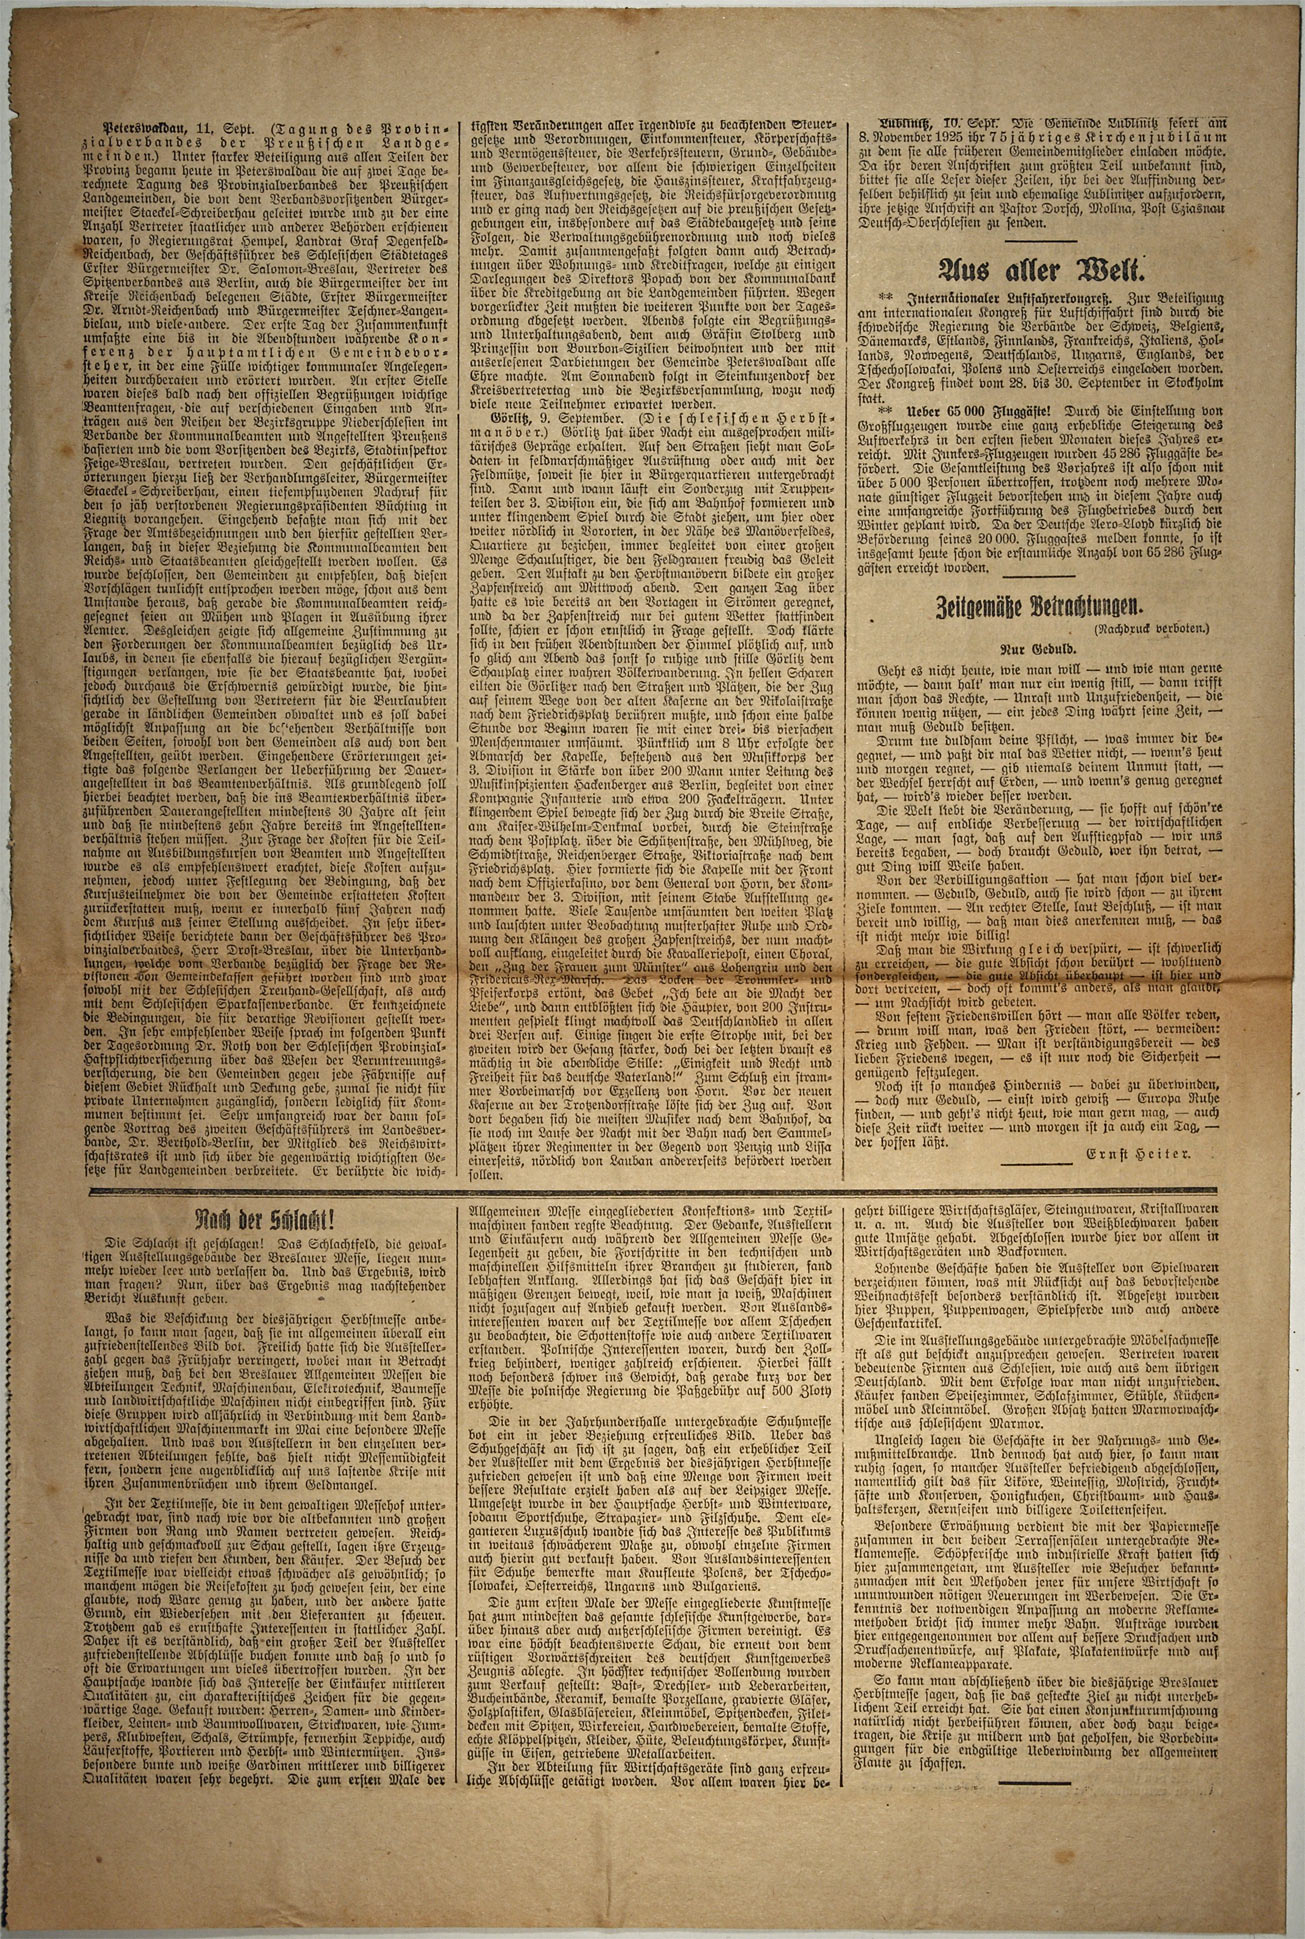 Der Landsmann 15.09.1925 Seite 6